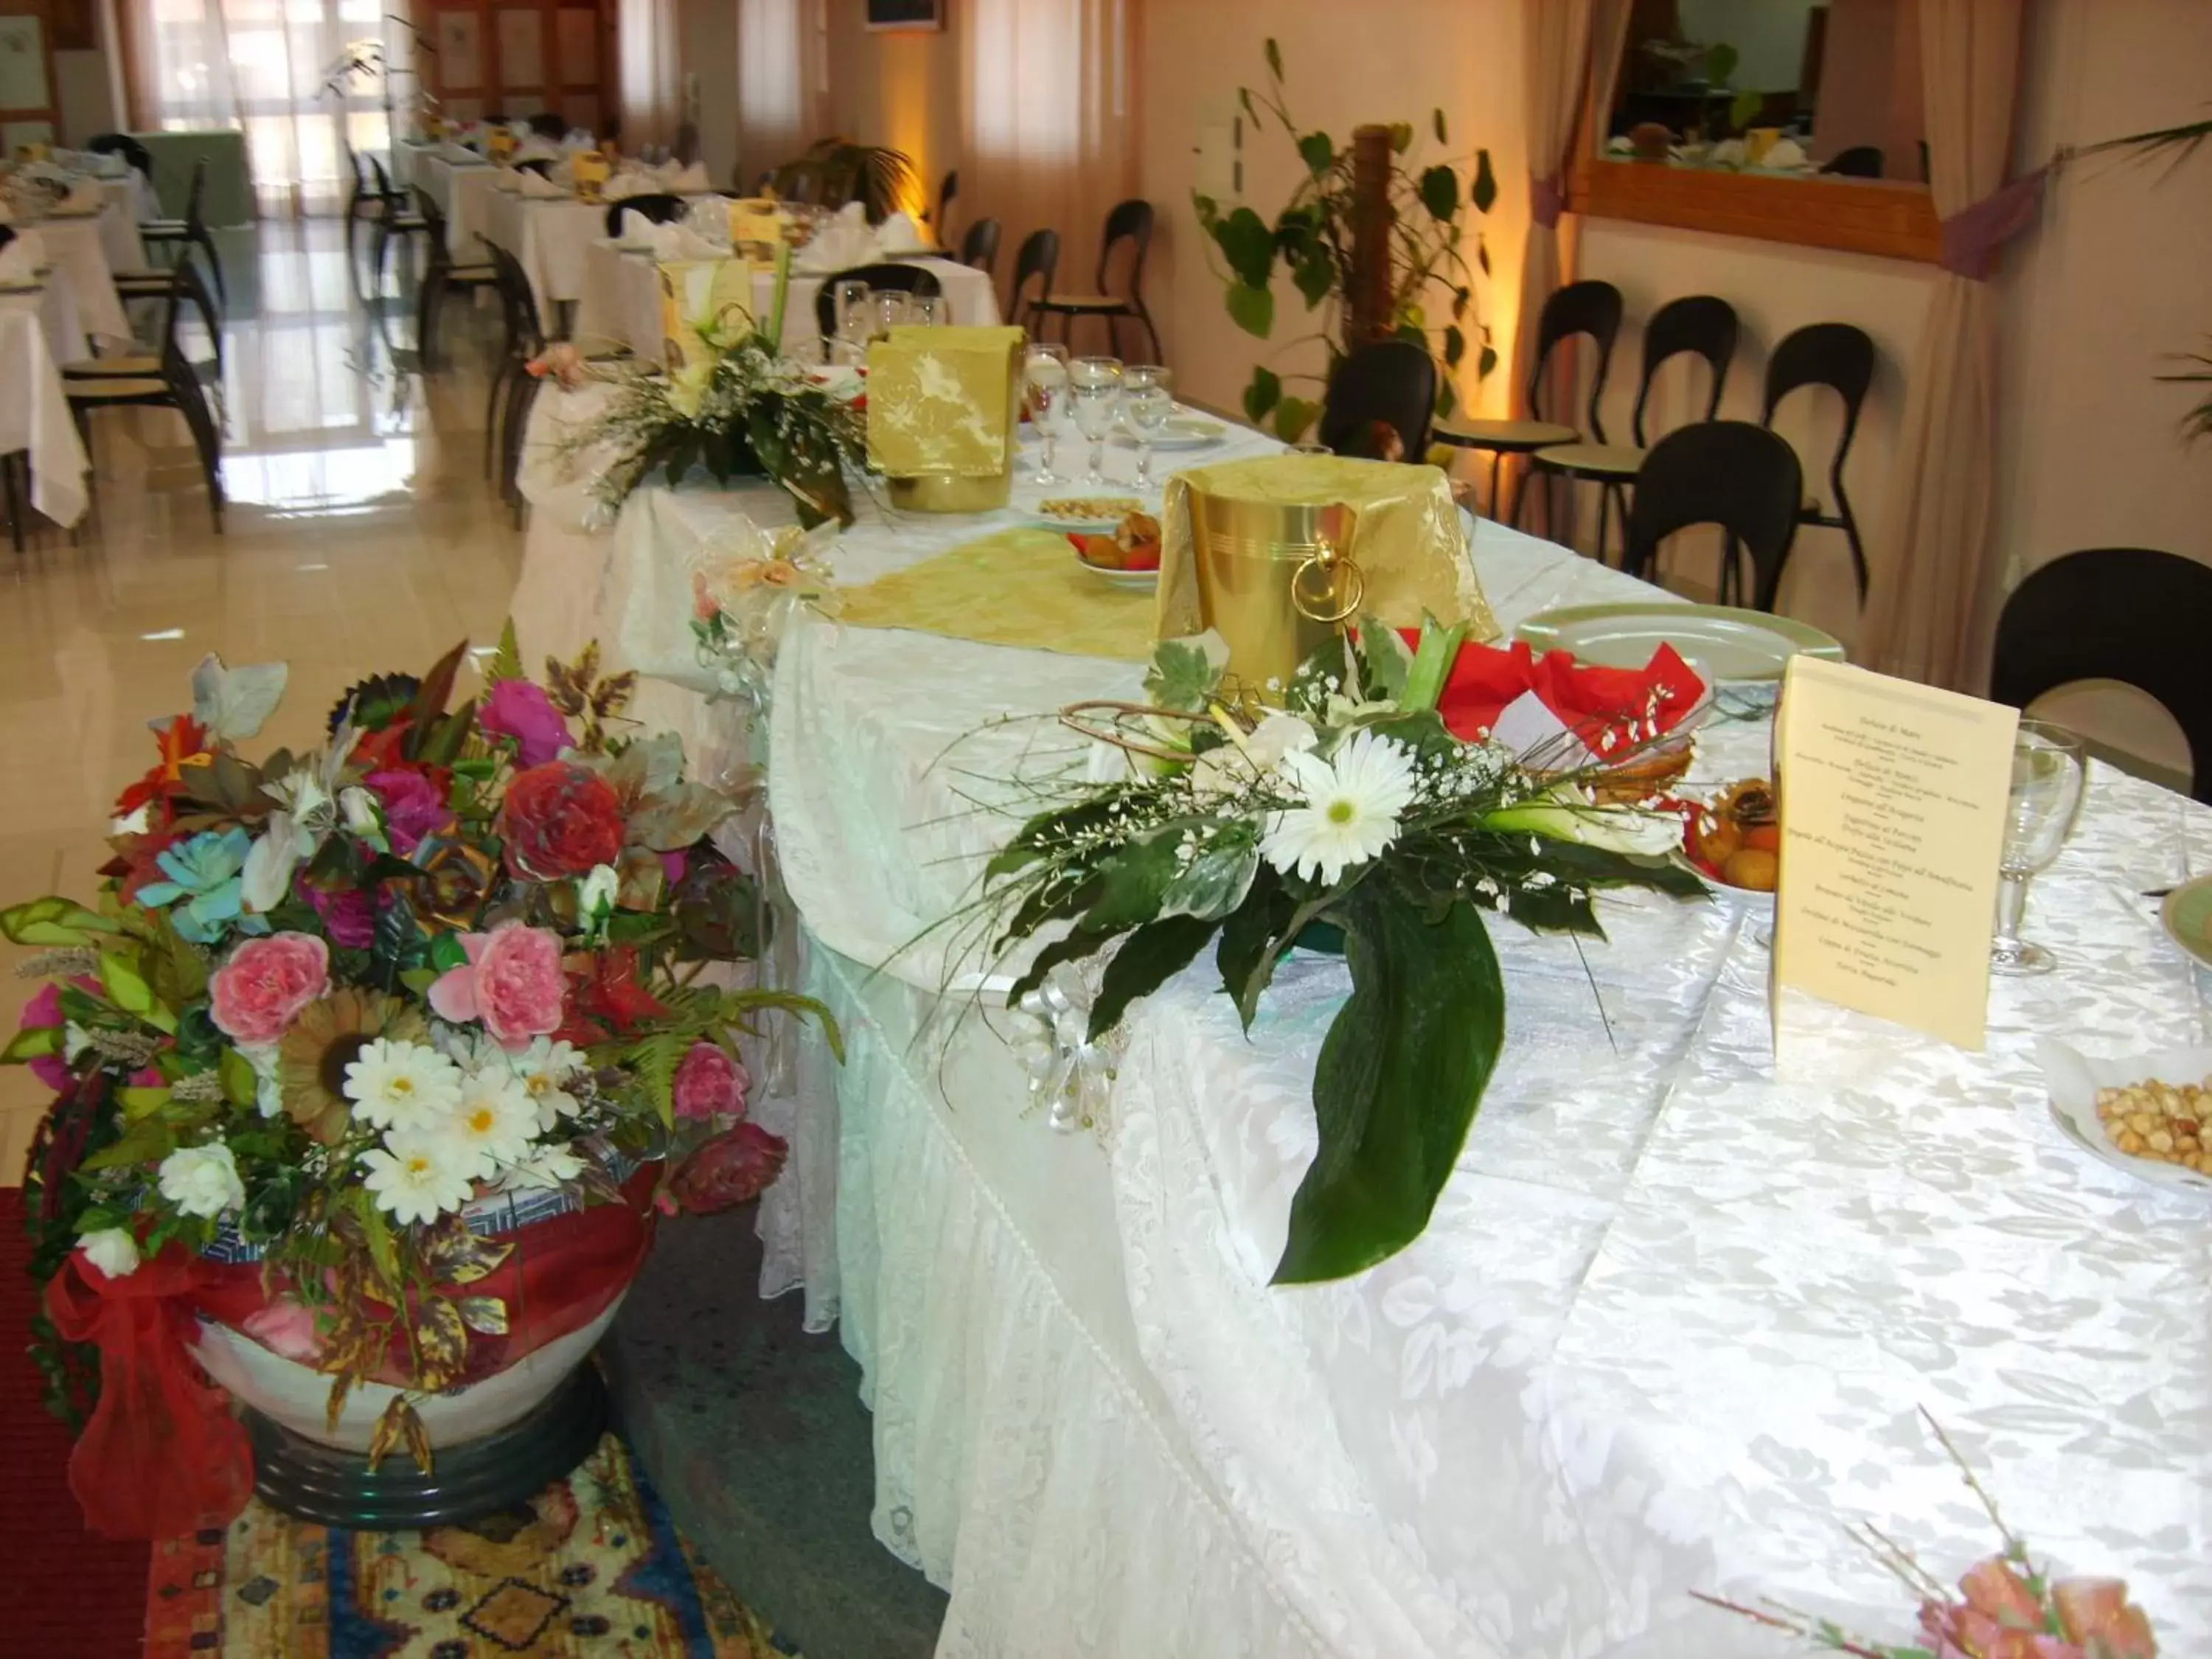 Decorative detail, Banquet Facilities in Hotel Rosso Di Sera